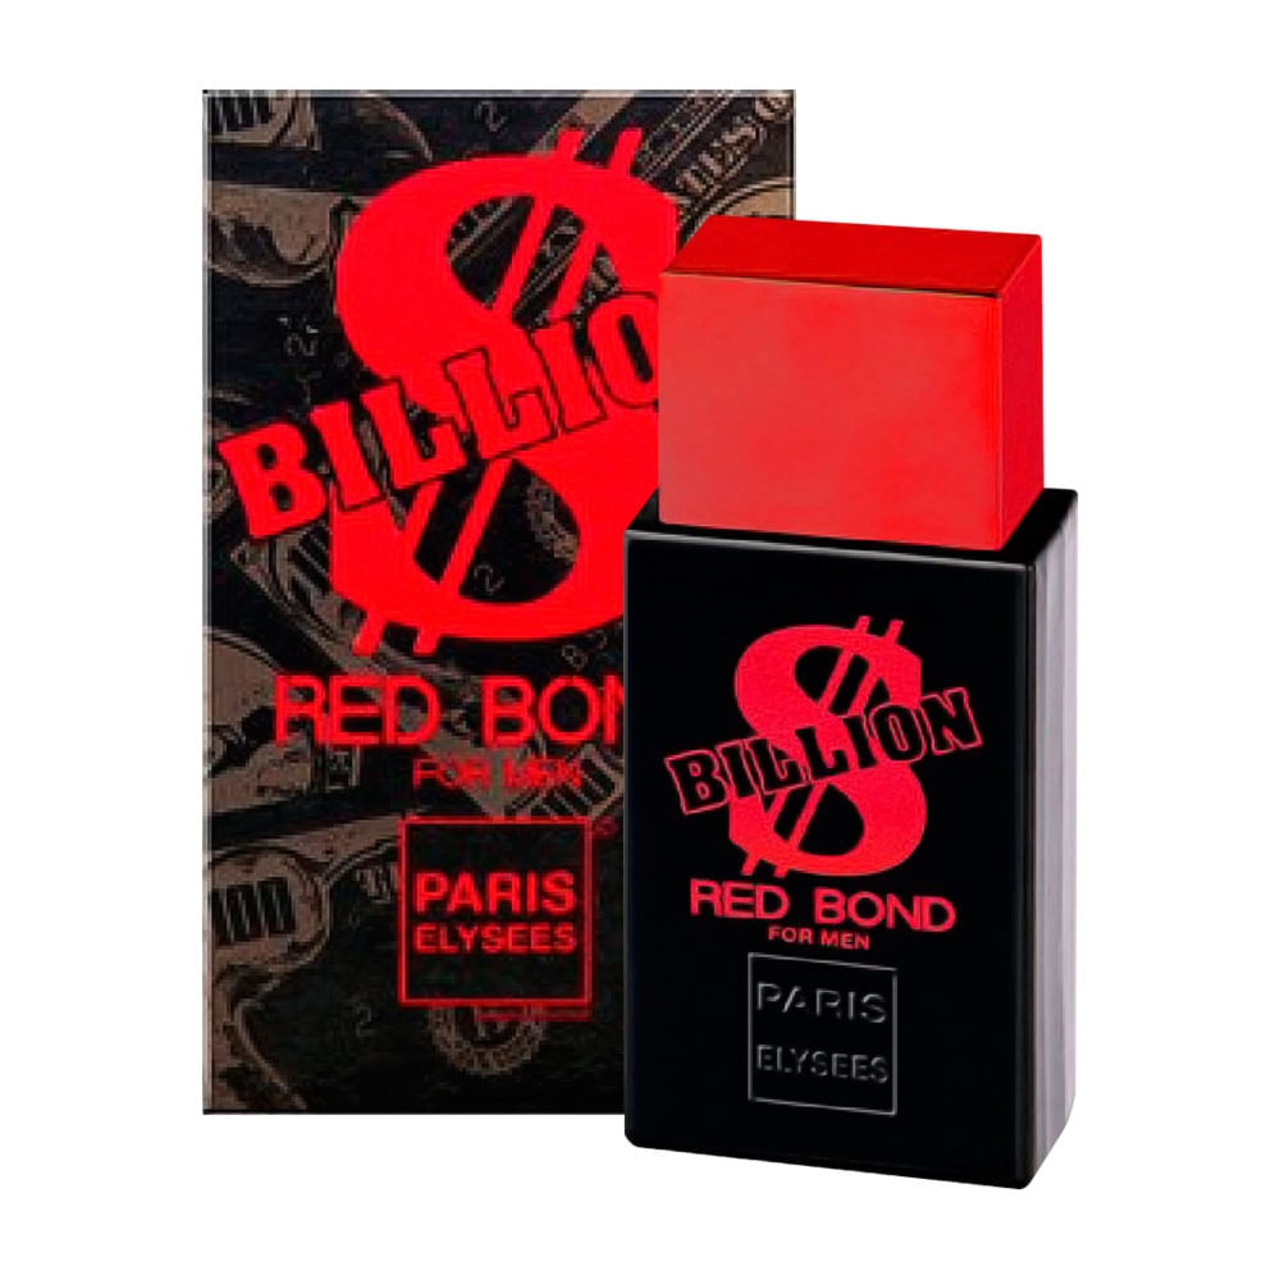 Perfume Billion Red Bond De Paris Elysees Eau De Toilette | ZZ MALL